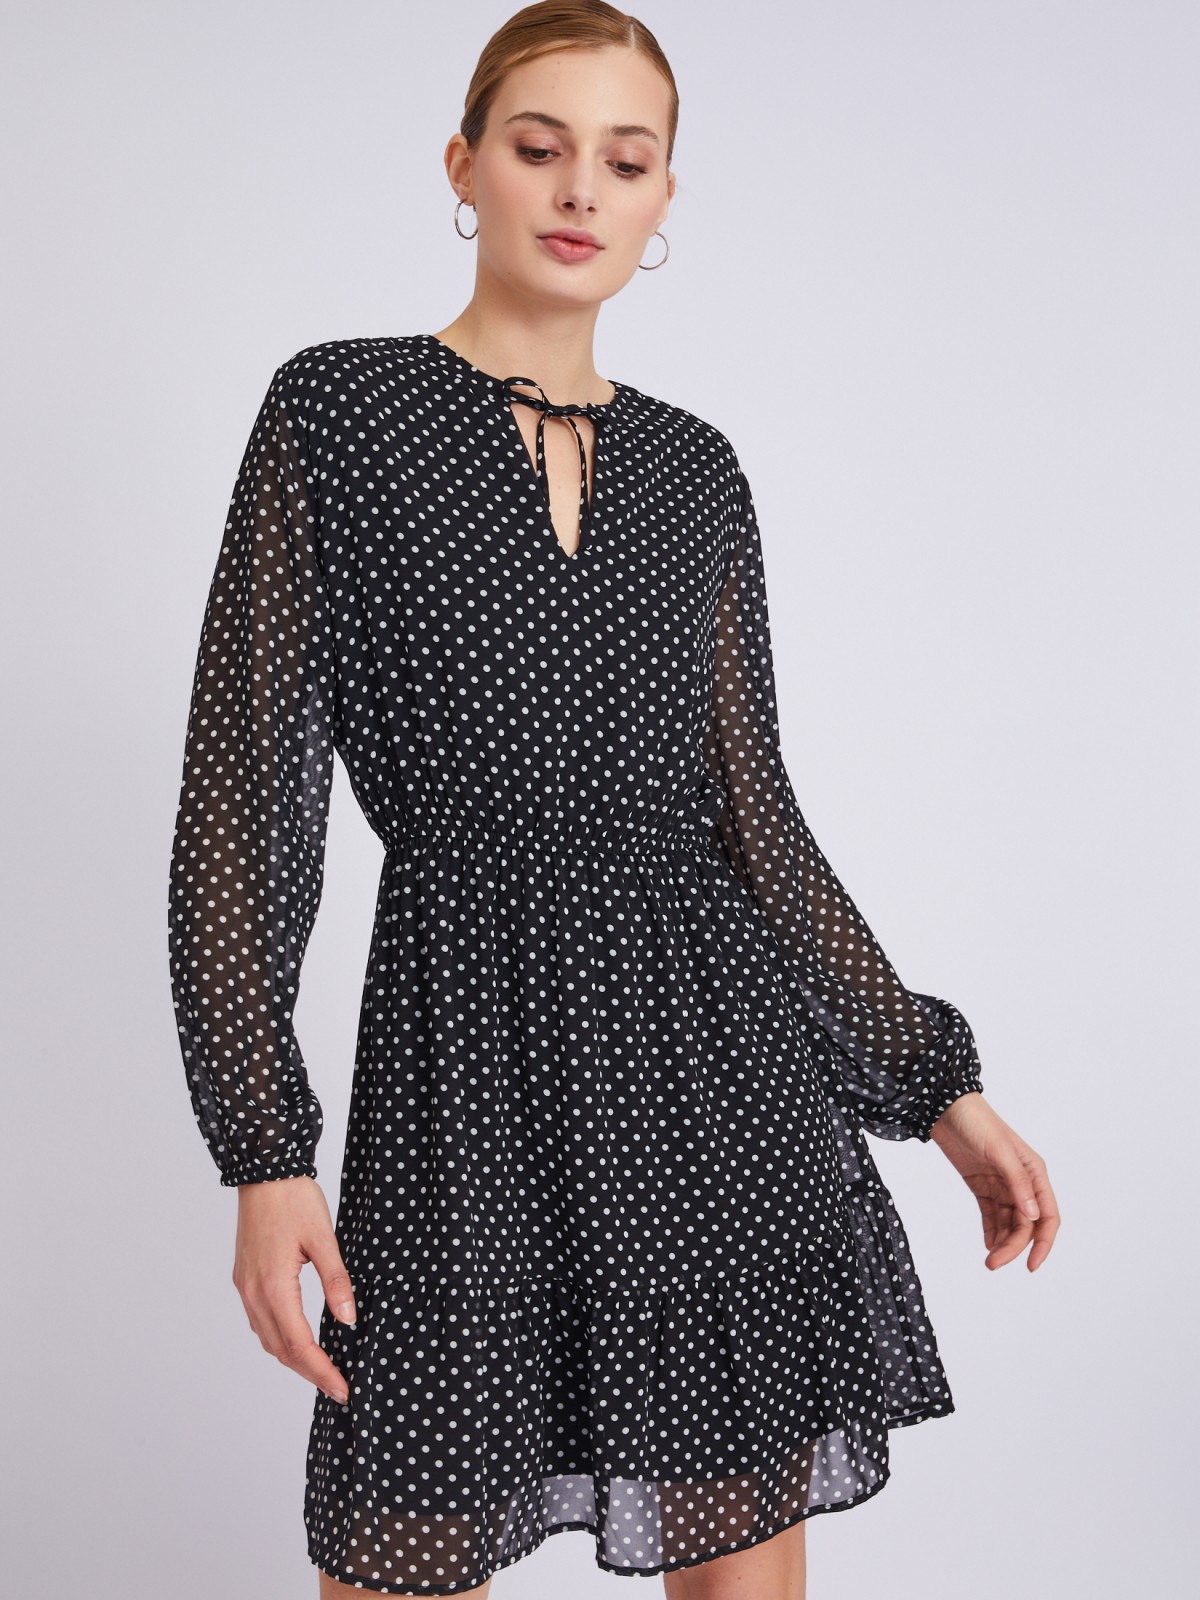 Шифоновое платье с узором в горошек zolla 023318262063, цвет черный, размер S